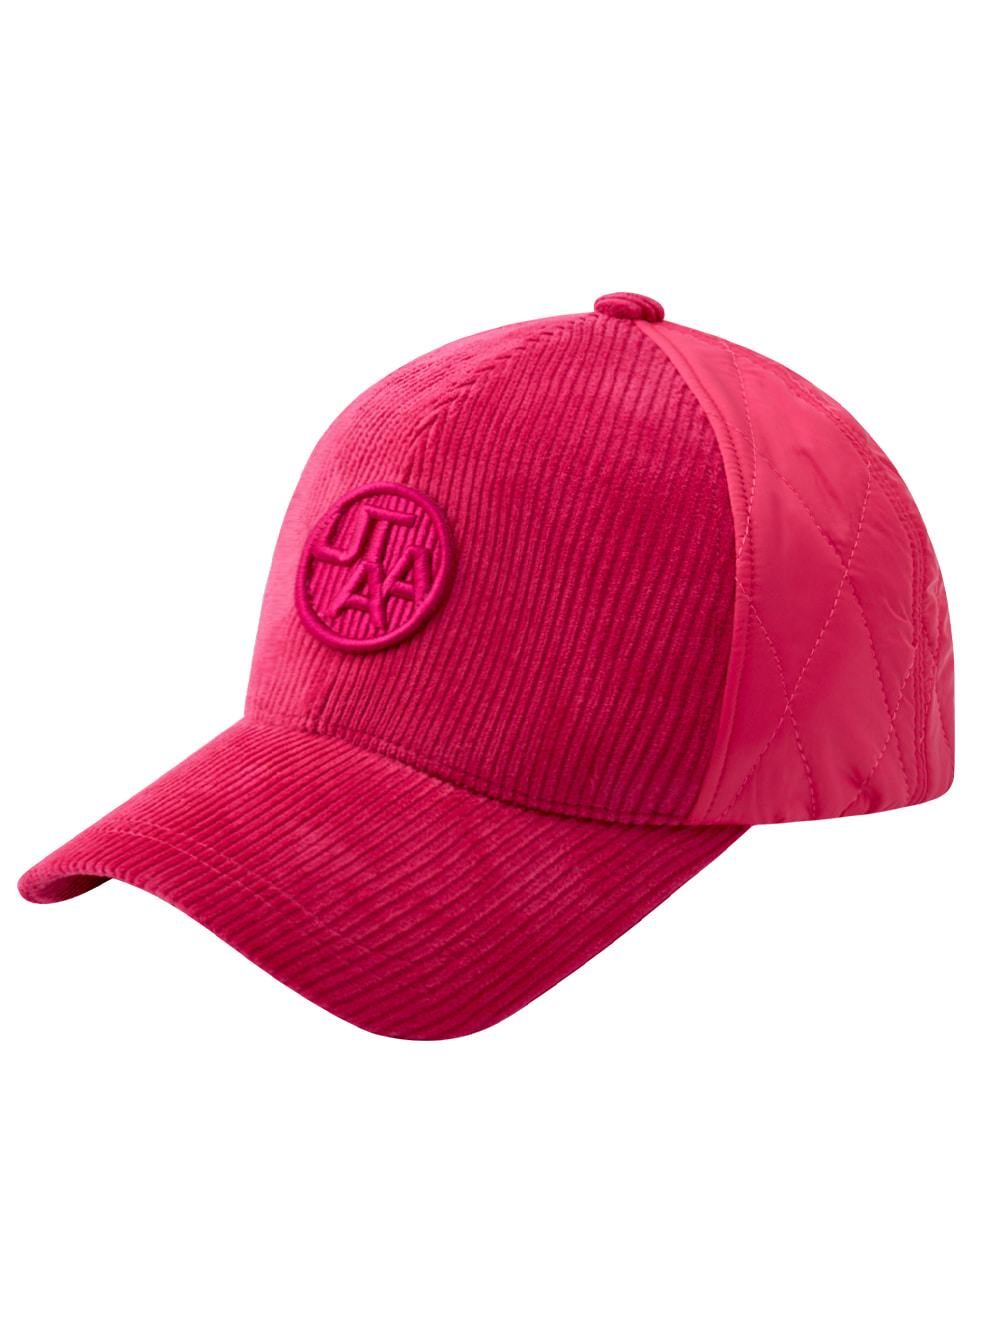 UTAA Symbol Quilting  Padding  Cap : Pink(UB4GCU211PK)